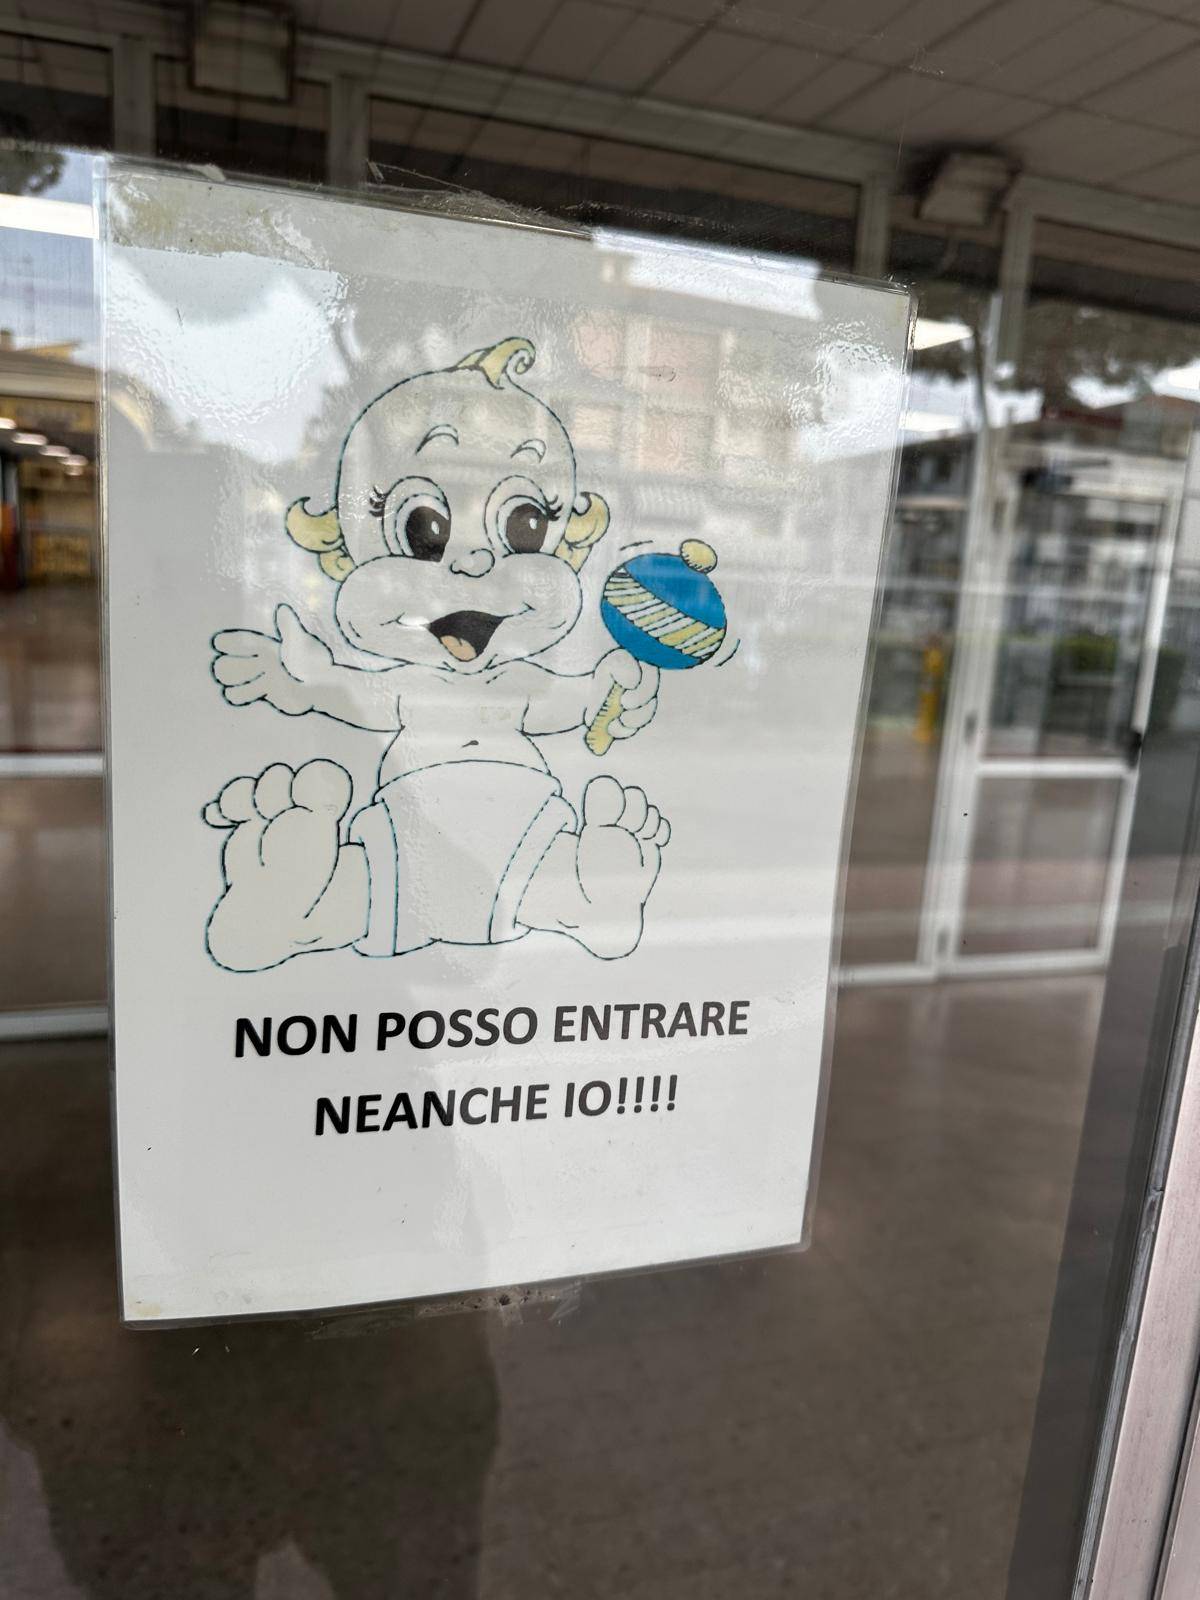 "Non posso entrare". La scuola vieta l'ingresso ai neonati: bufera a Firenze